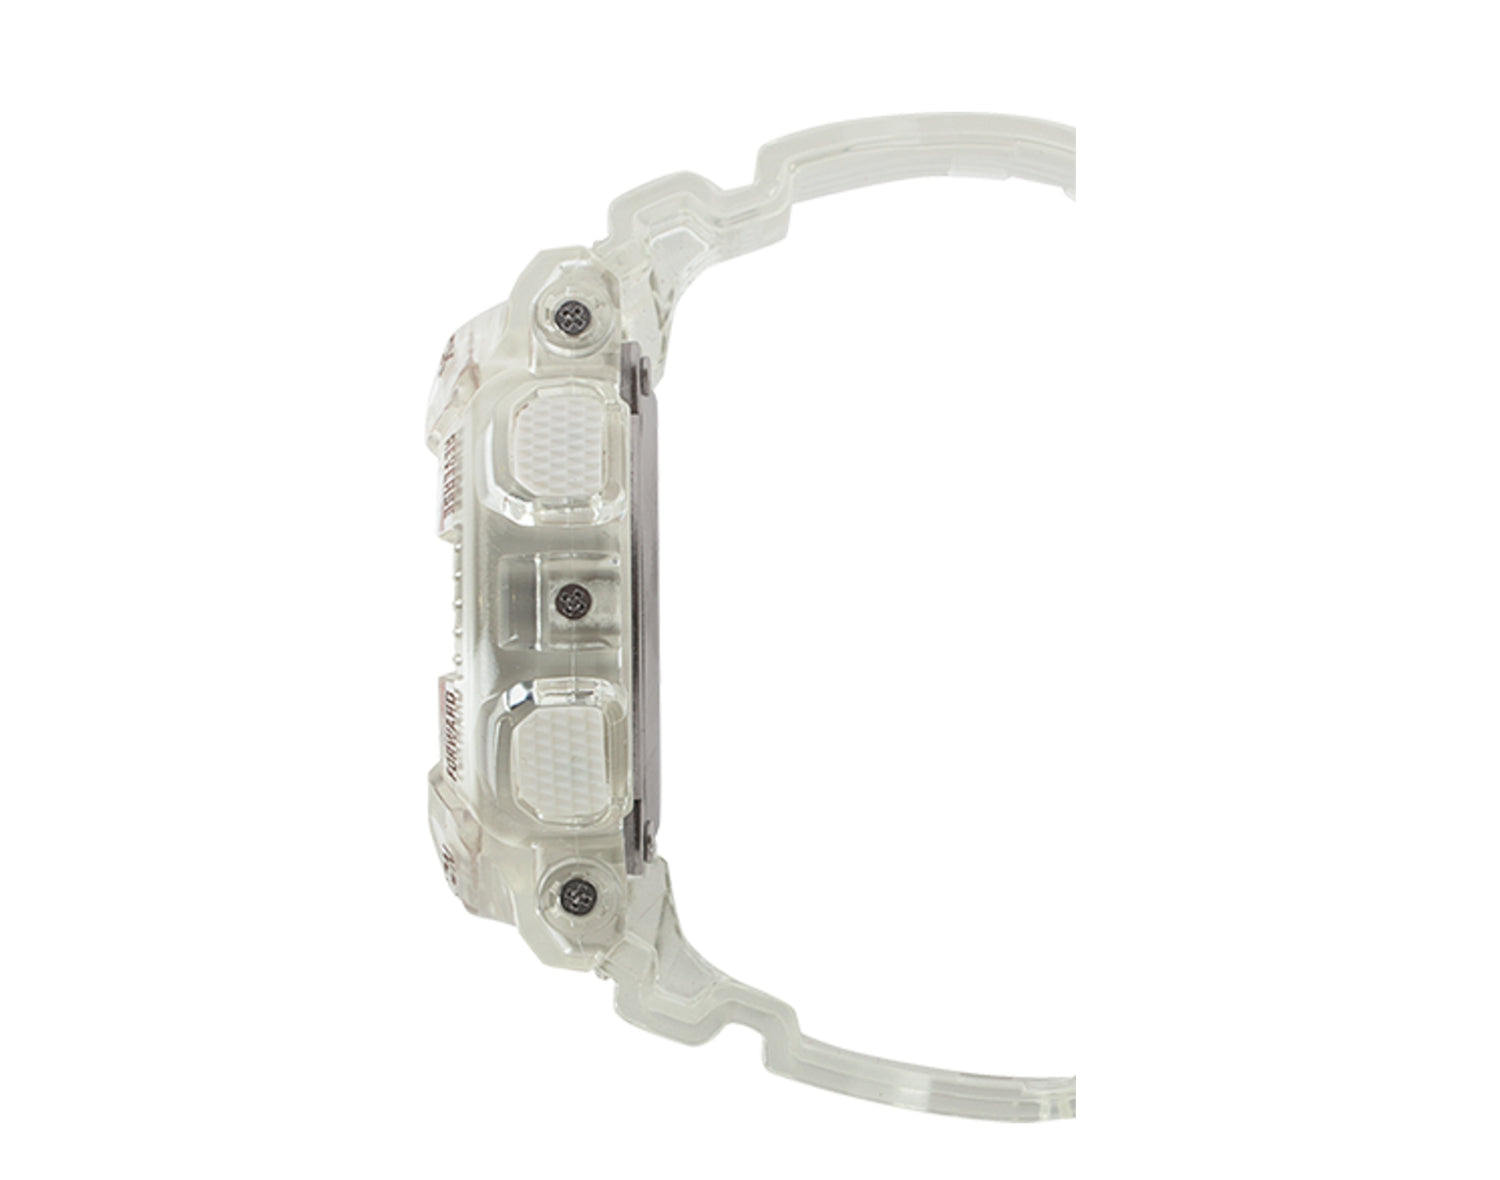 Casio G-Shock GMAS120 S Series Metallic Face Analog Digital Skeleton Resin Women's Watch